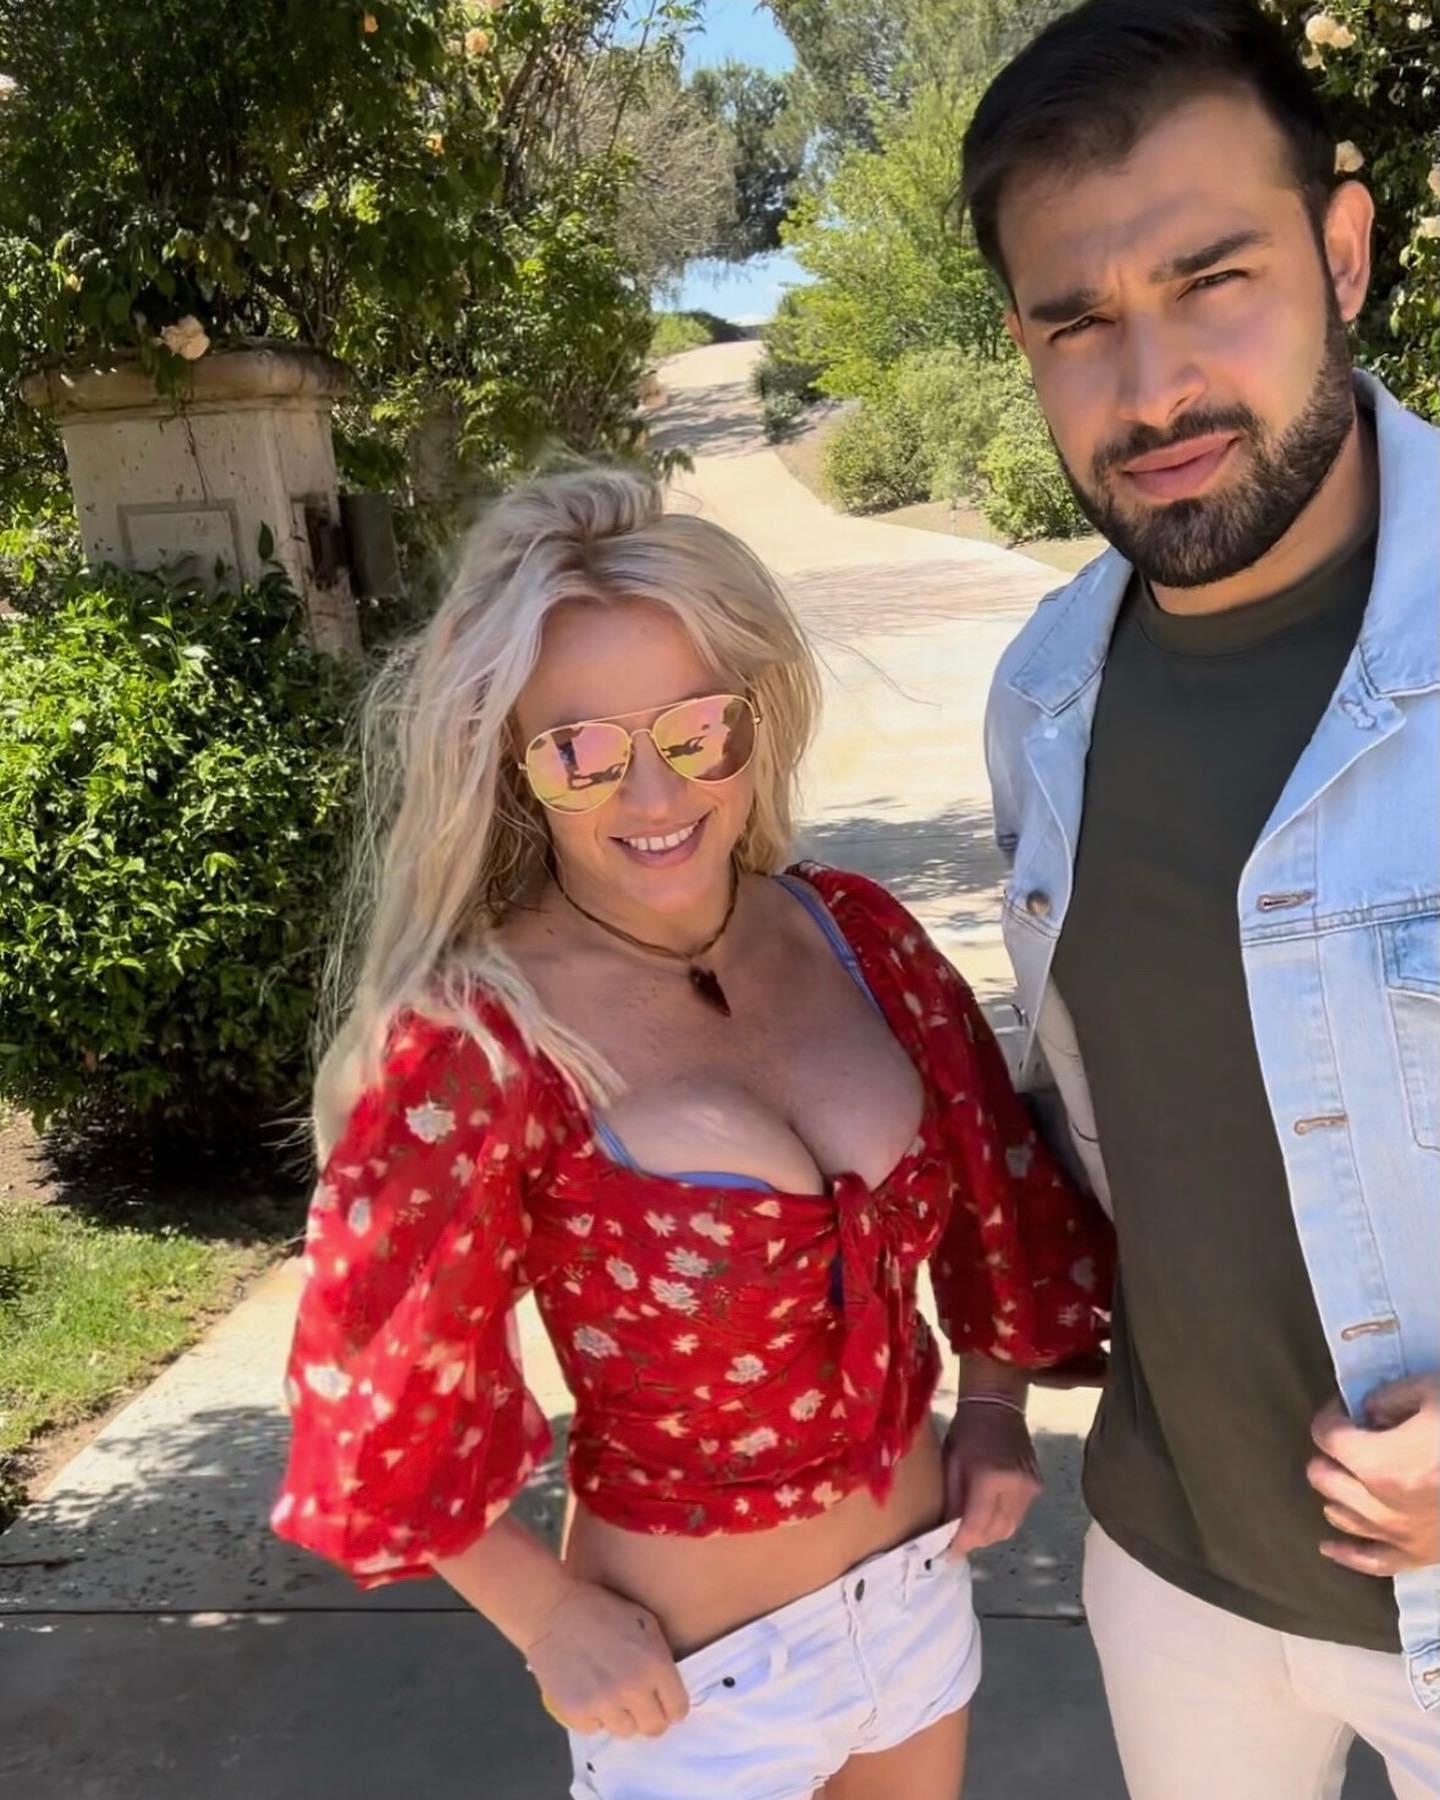 Britney Spears poses alongside Sam Asghari